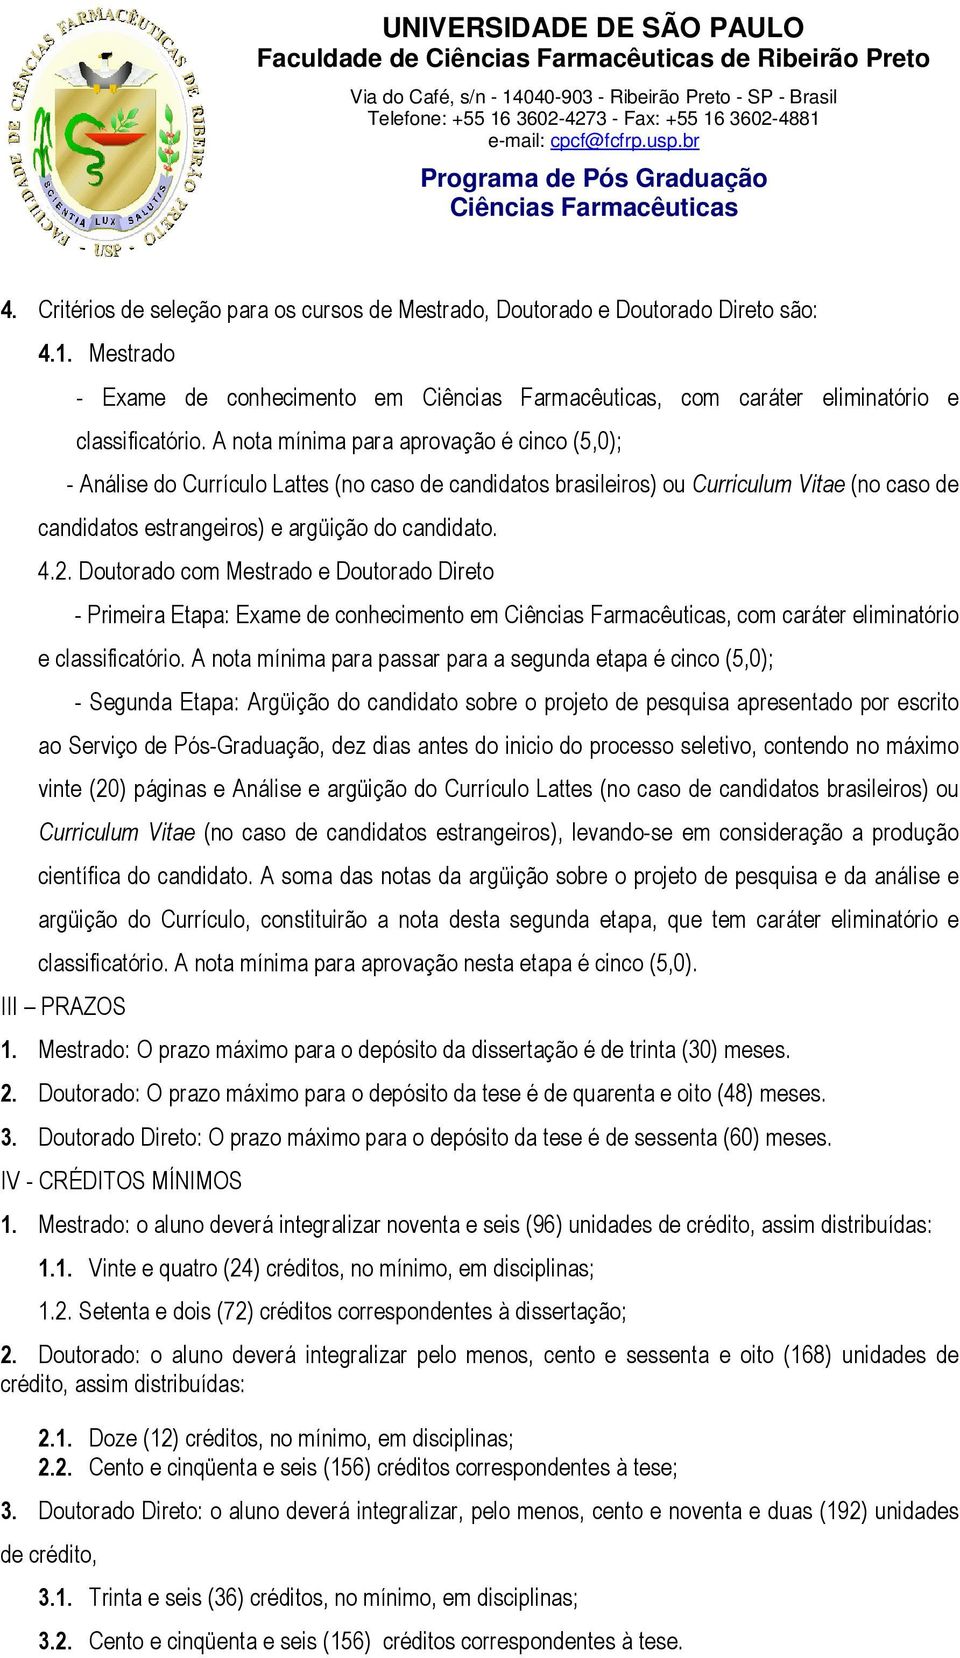 A nota mínima para aprovação é cinco (5,0); - Análise do Currículo Lattes (no caso de candidatos brasileiros) ou Curriculum Vitae (no caso de candidatos estrangeiros) e argüição do candidato. 4.2.